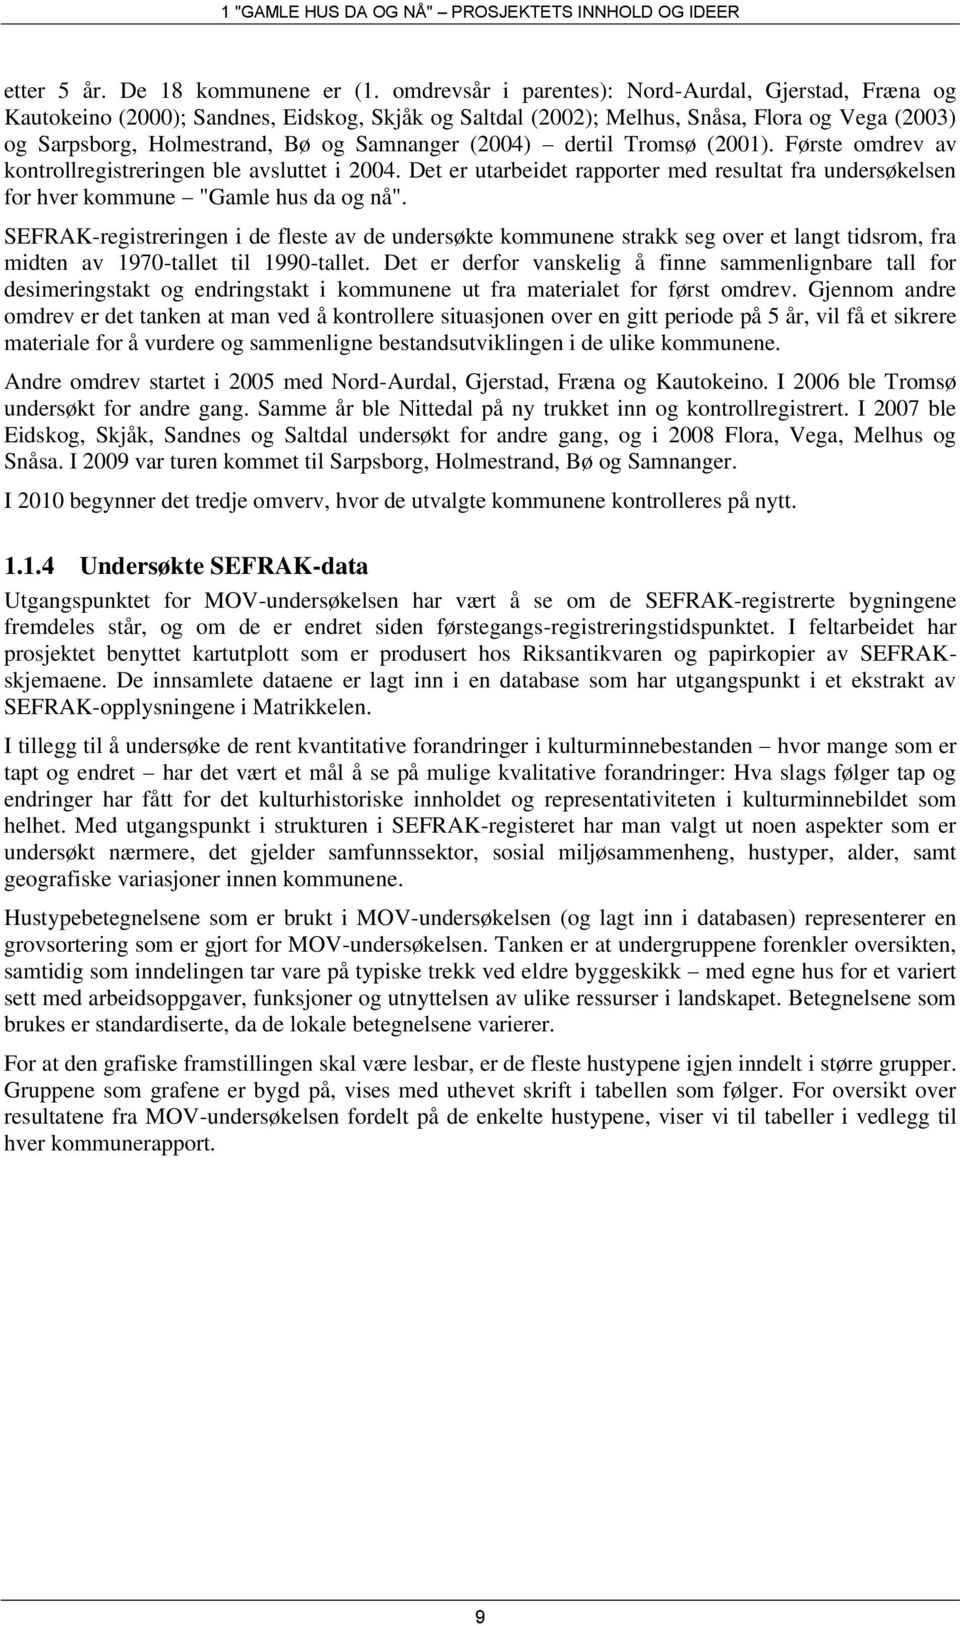 (2004) dertil Tromsø (2001). Første omdrev av kontrollregistreringen ble avsluttet i 2004. Det er utarbeidet rapporter med resultat fra undersøkelsen for hver kommune "Gamle hus da og nå".